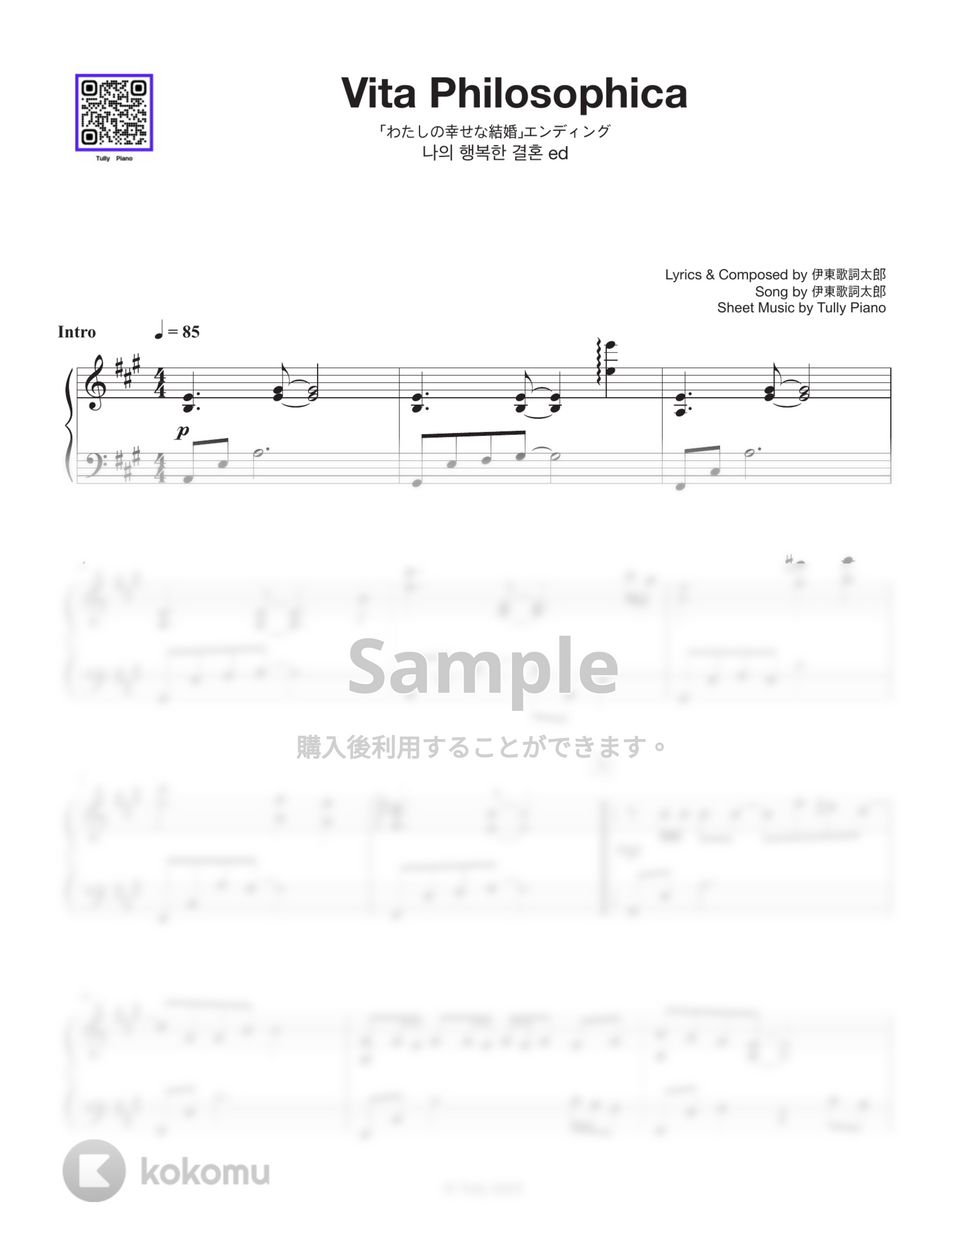 伊東歌詞太郎 - ヰタ・フィロソフィカ by Tully Piano